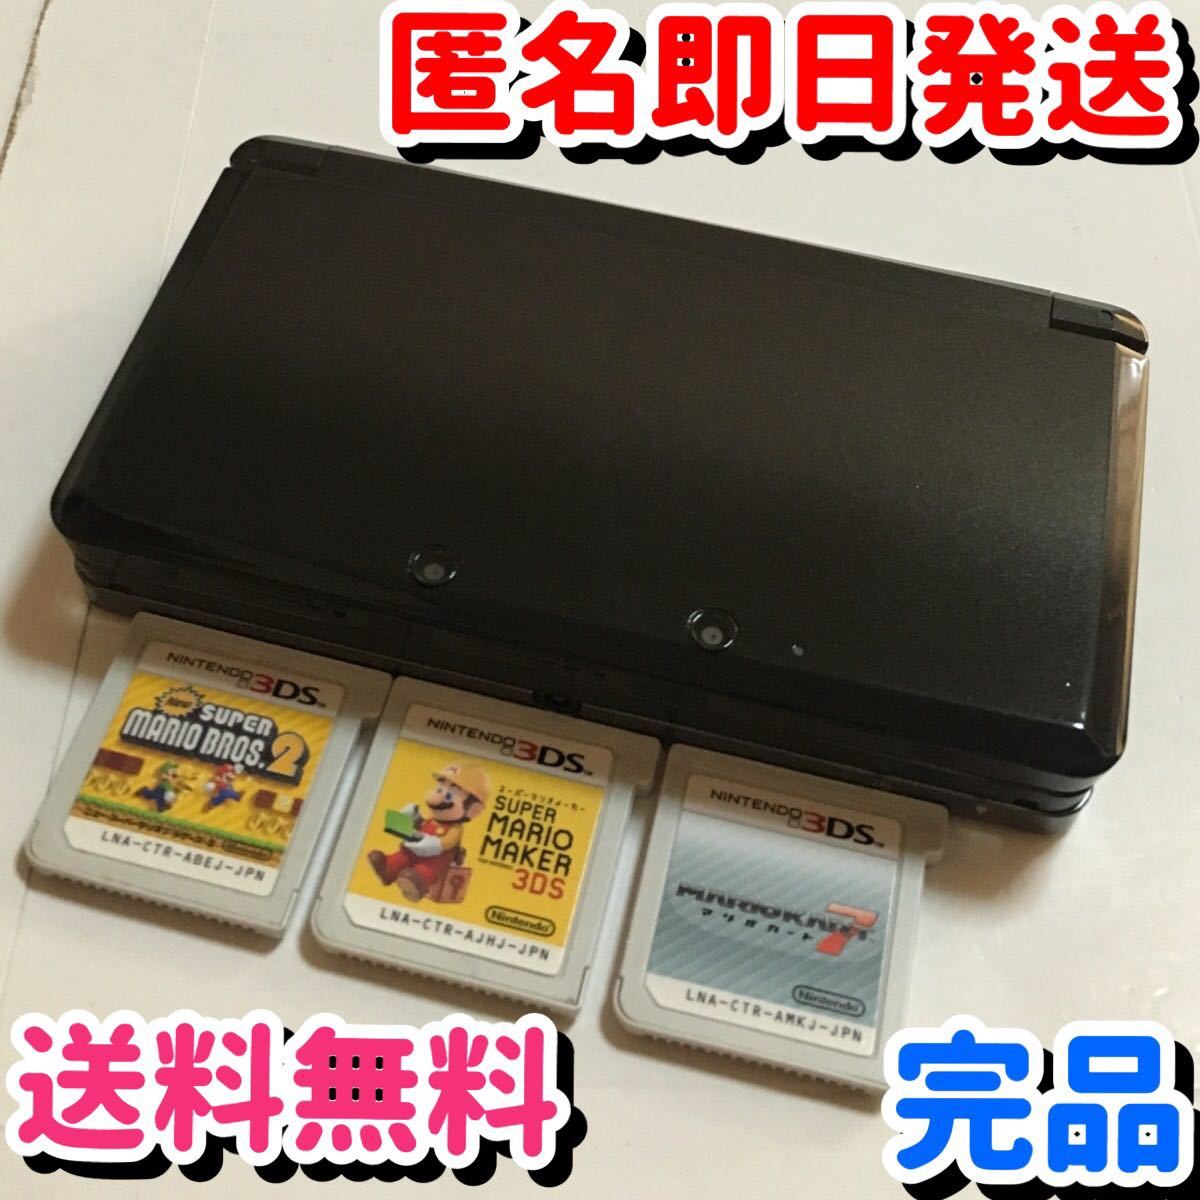 【美品】【完品】ニンテンドー 3DS コスモブラック マリオメーカー マリオカート7